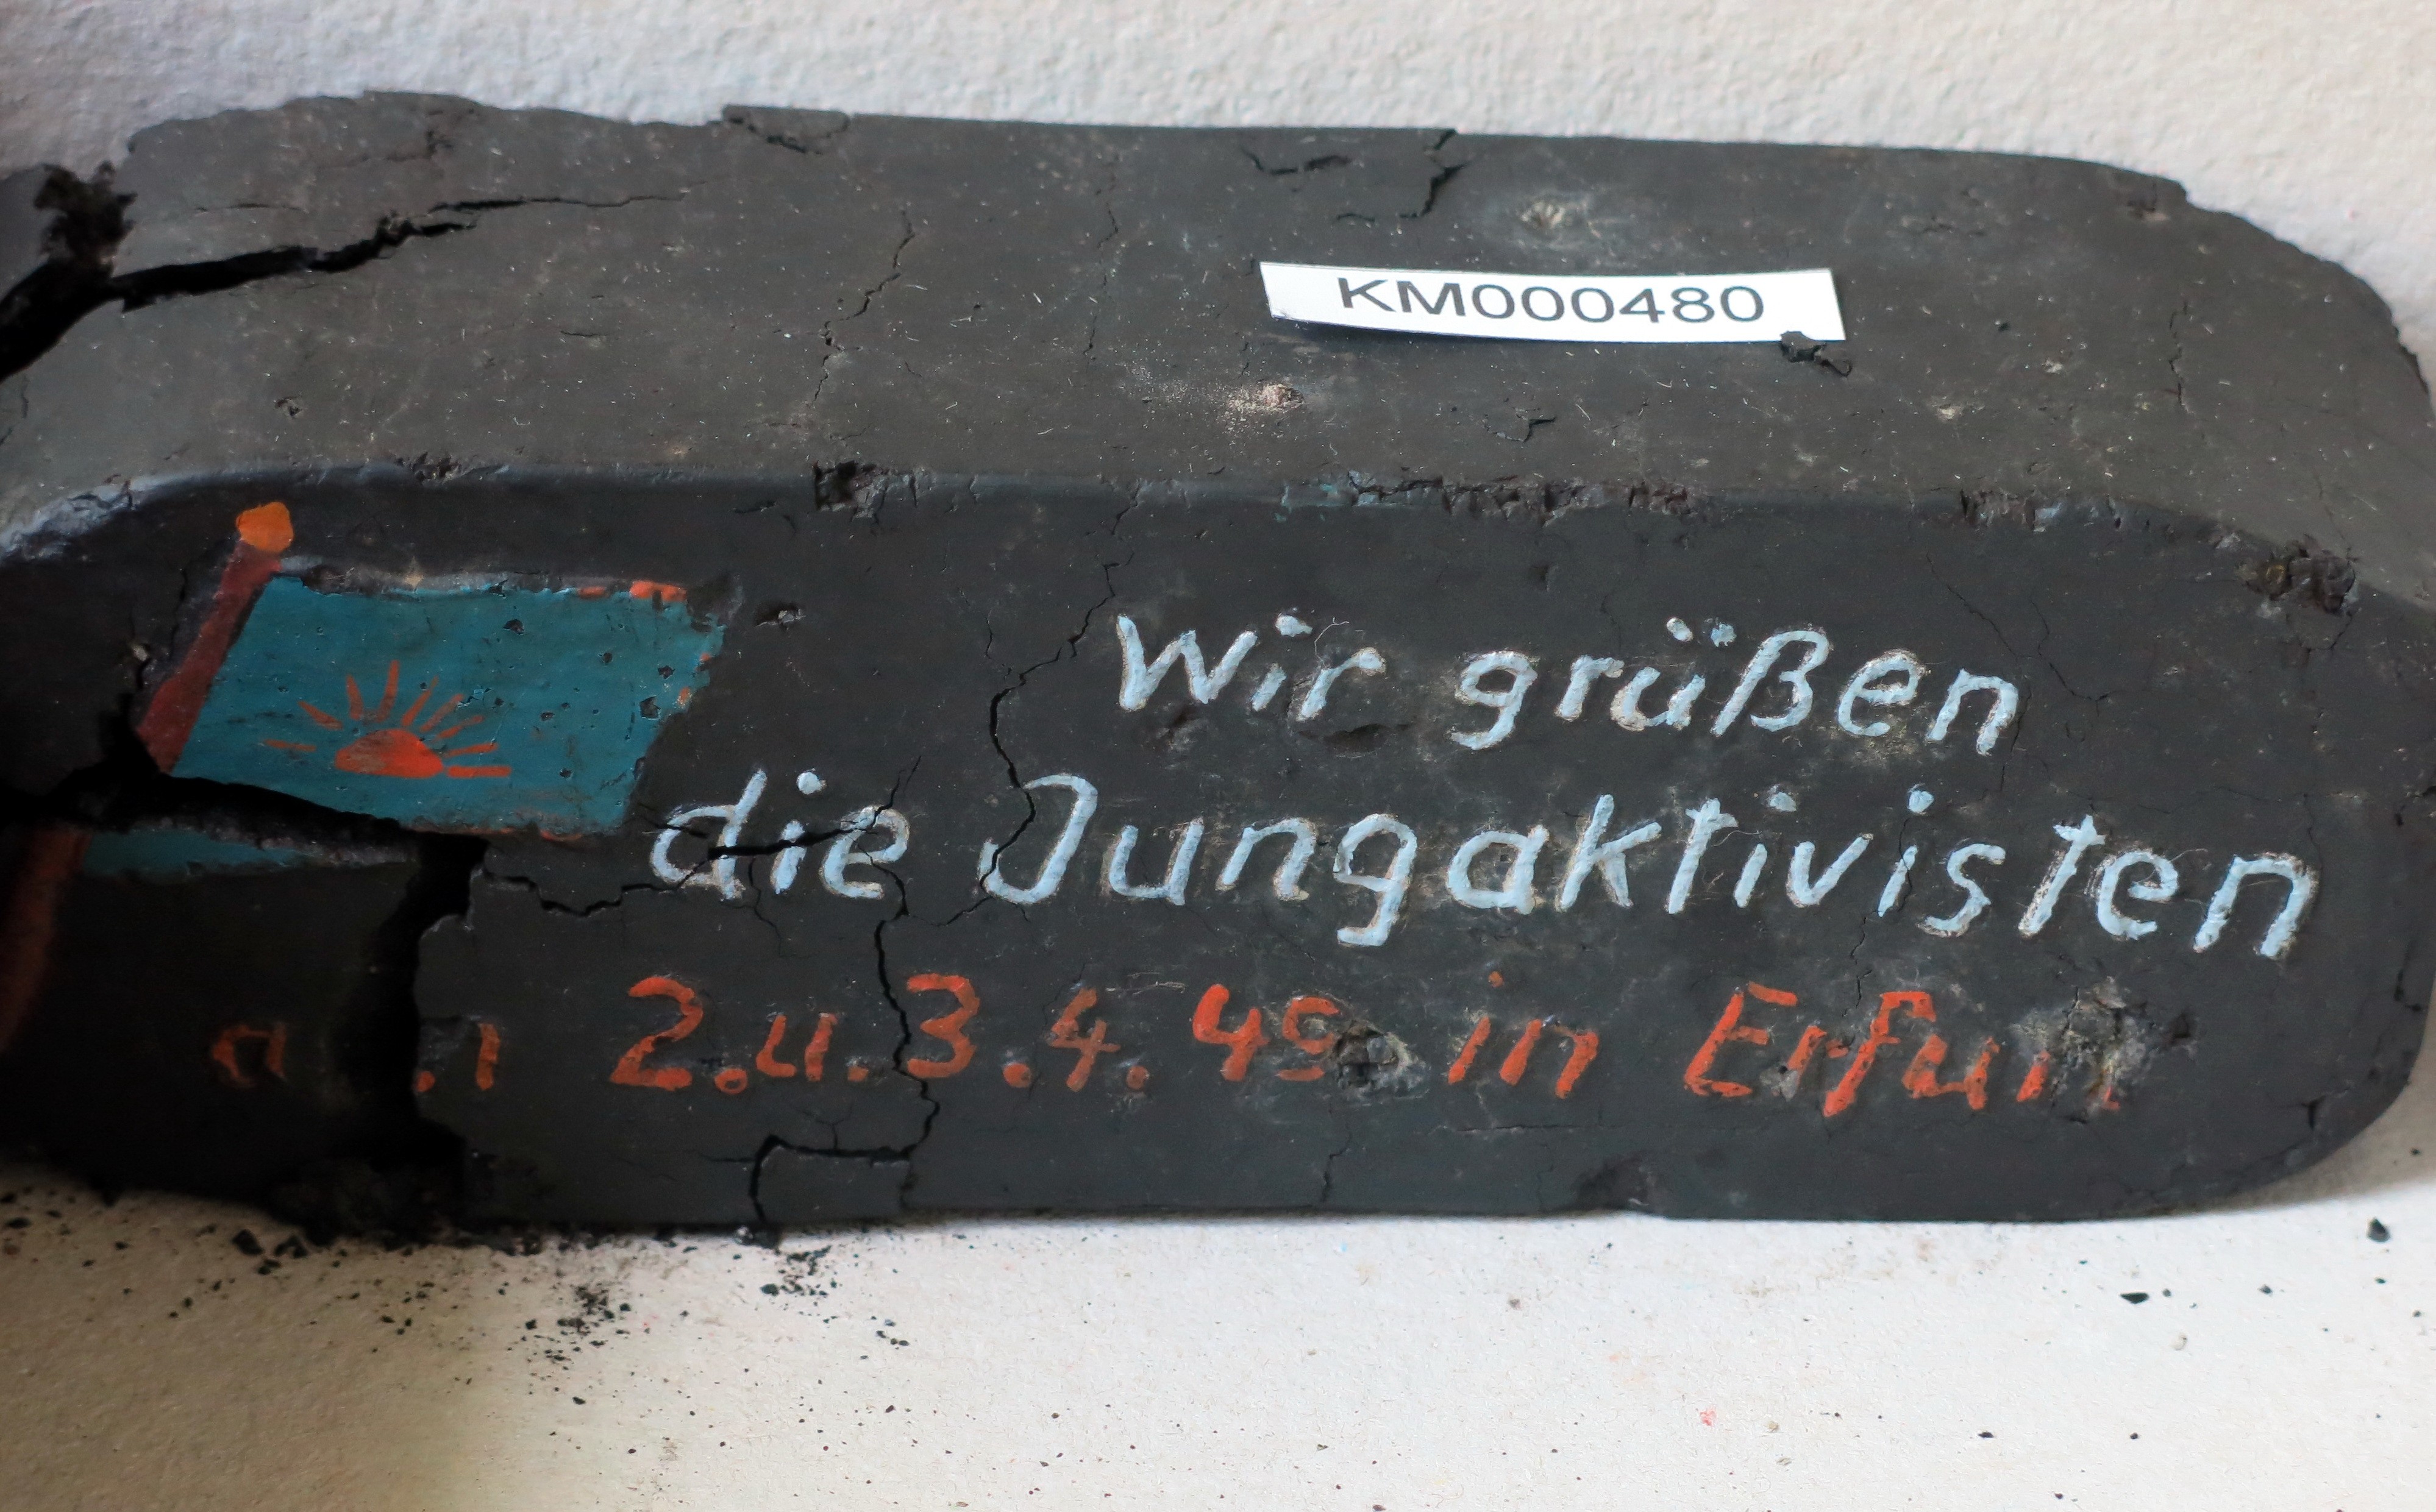 Zierbrikett "Wir grüßen die Jungaktivisten 2. u. 3.4.49 in Erfurt" (Energiefabrik Knappenrode CC BY-SA)